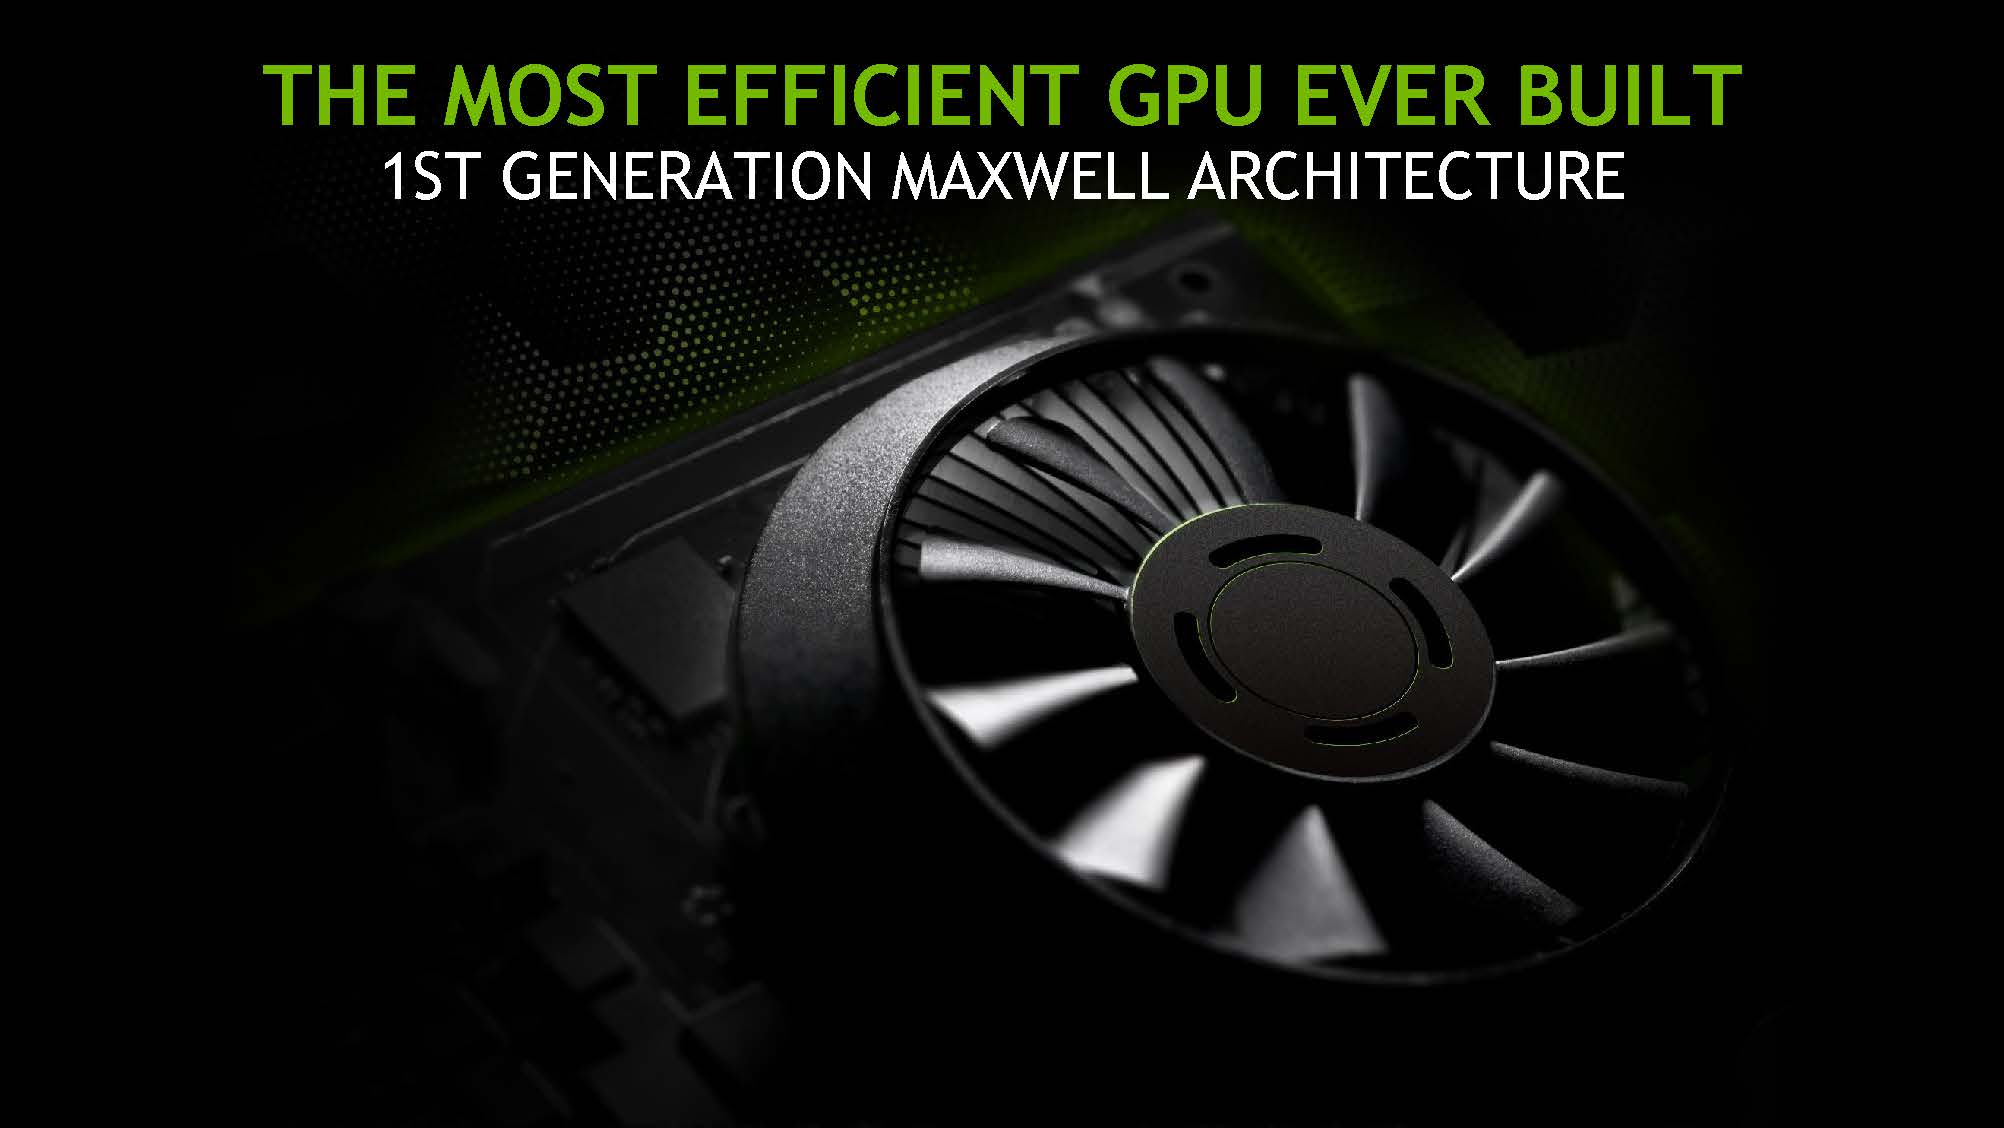 Nvidia GTX 750 จะเปลี่ยนมาใช้ชิป GM206 ใหม่ขึ้นกว่าเดิม